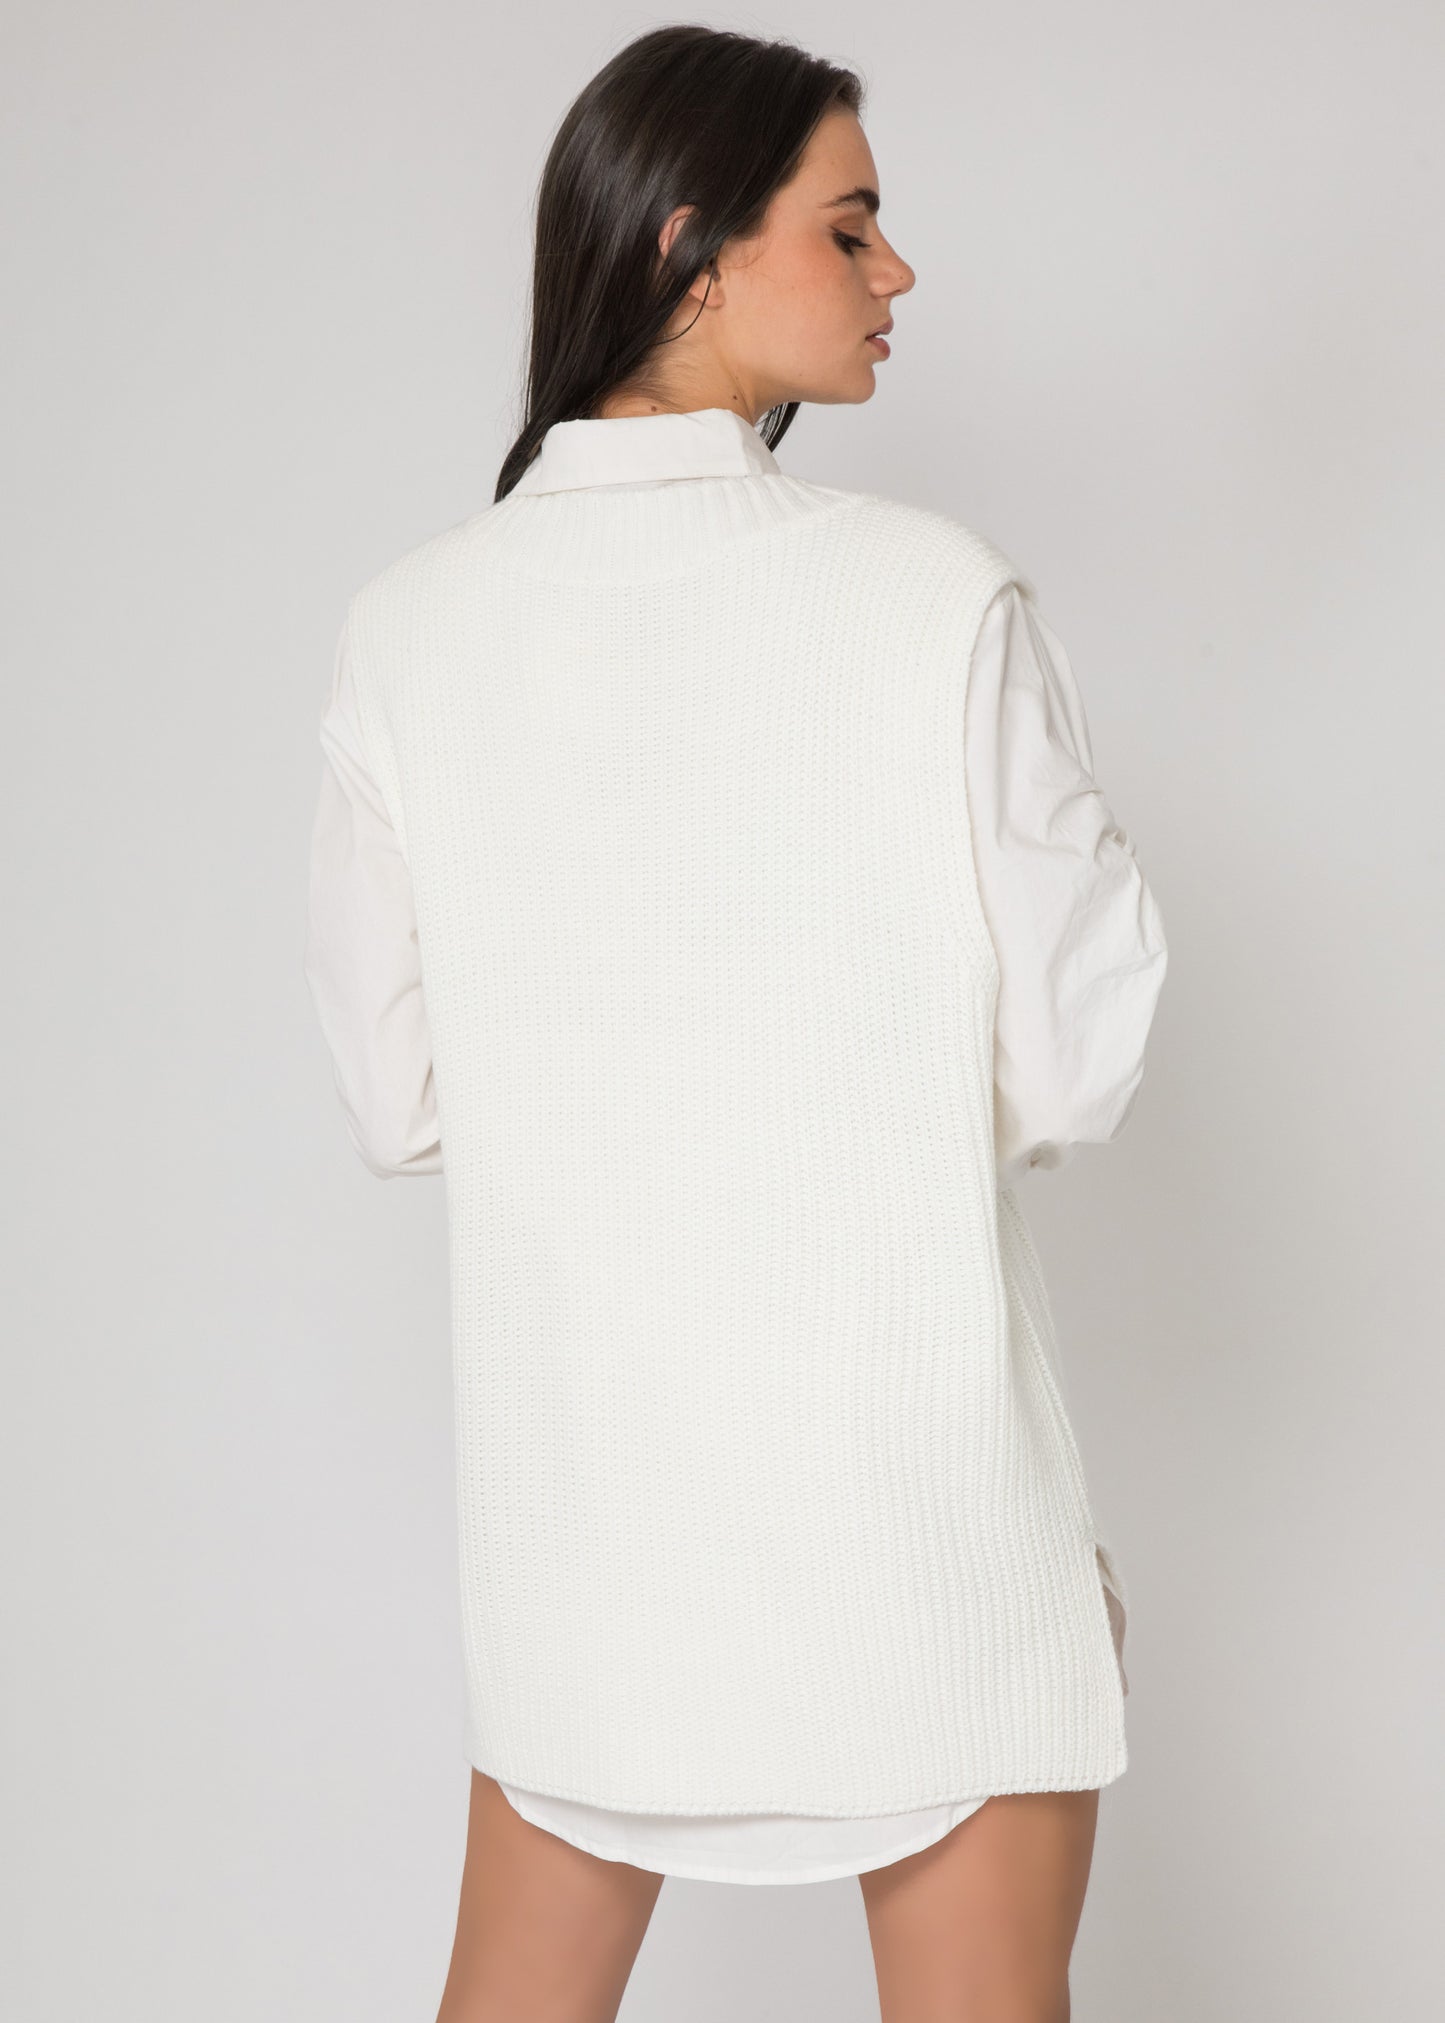 Knit sleeveless jumper in white